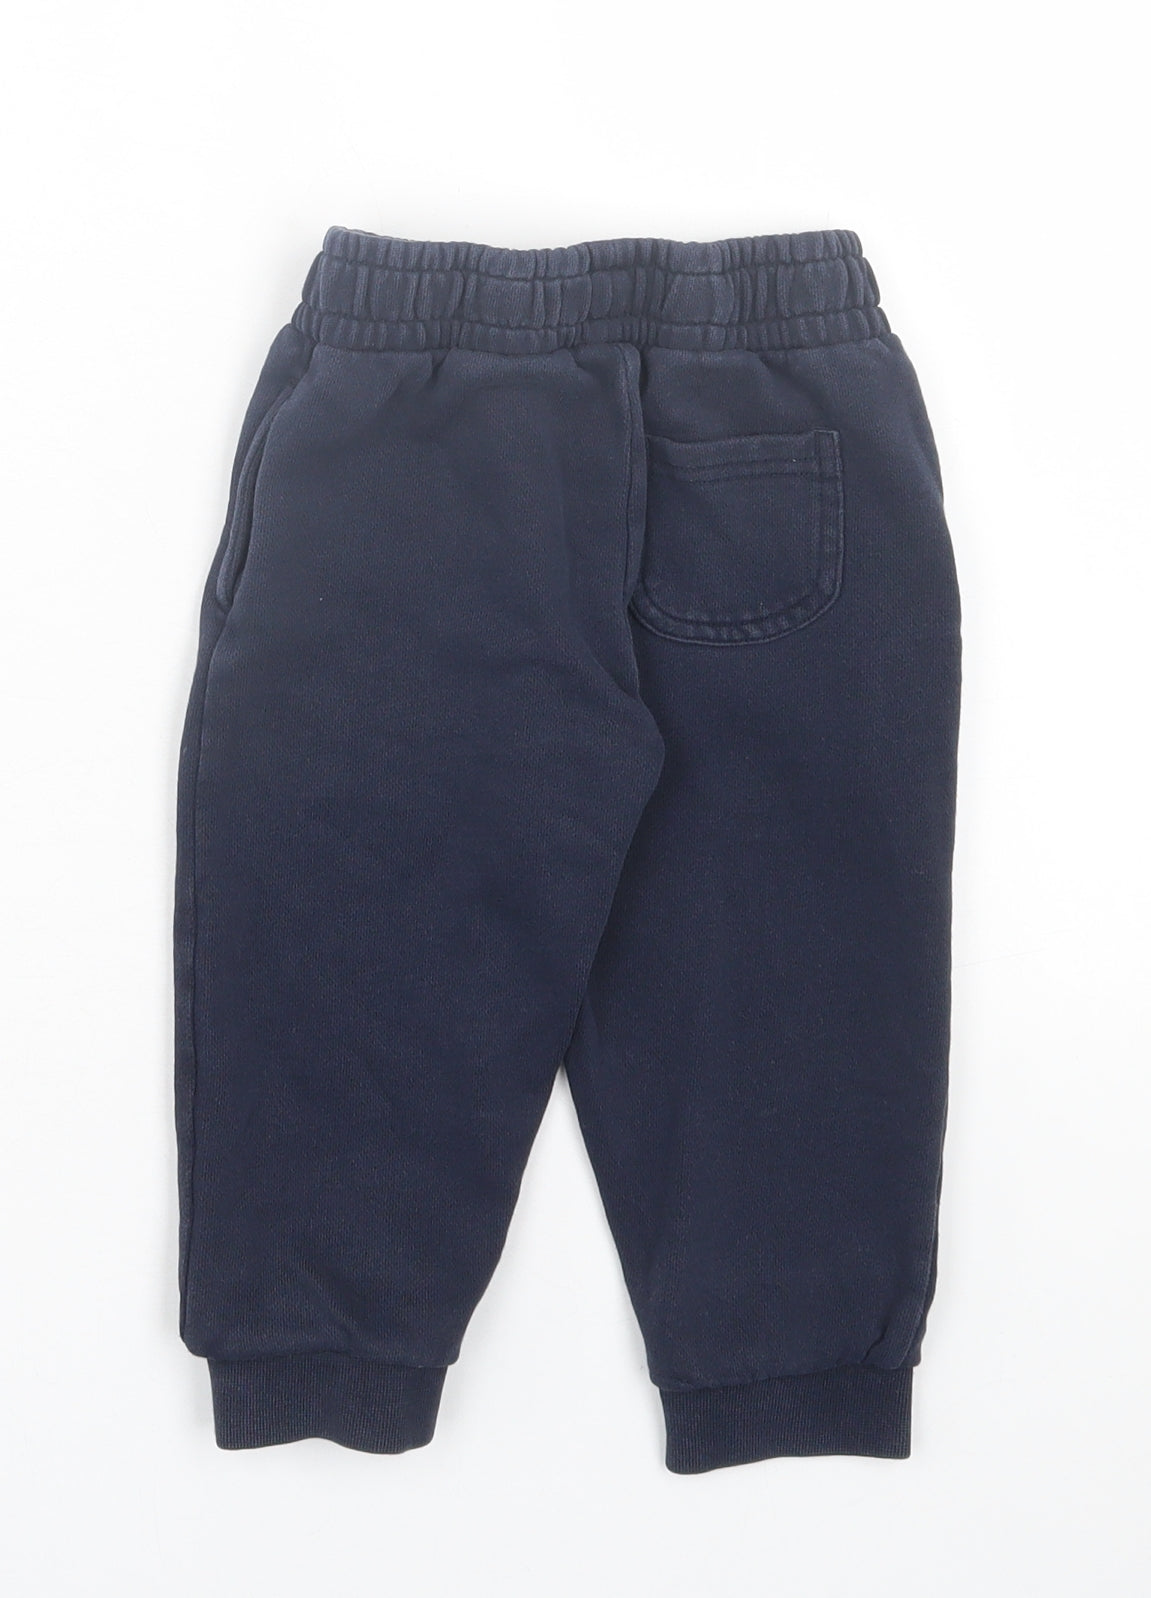 Lyle & Scott Boys Blue Cotton Jogger Trousers Size 24 Months Drawstring